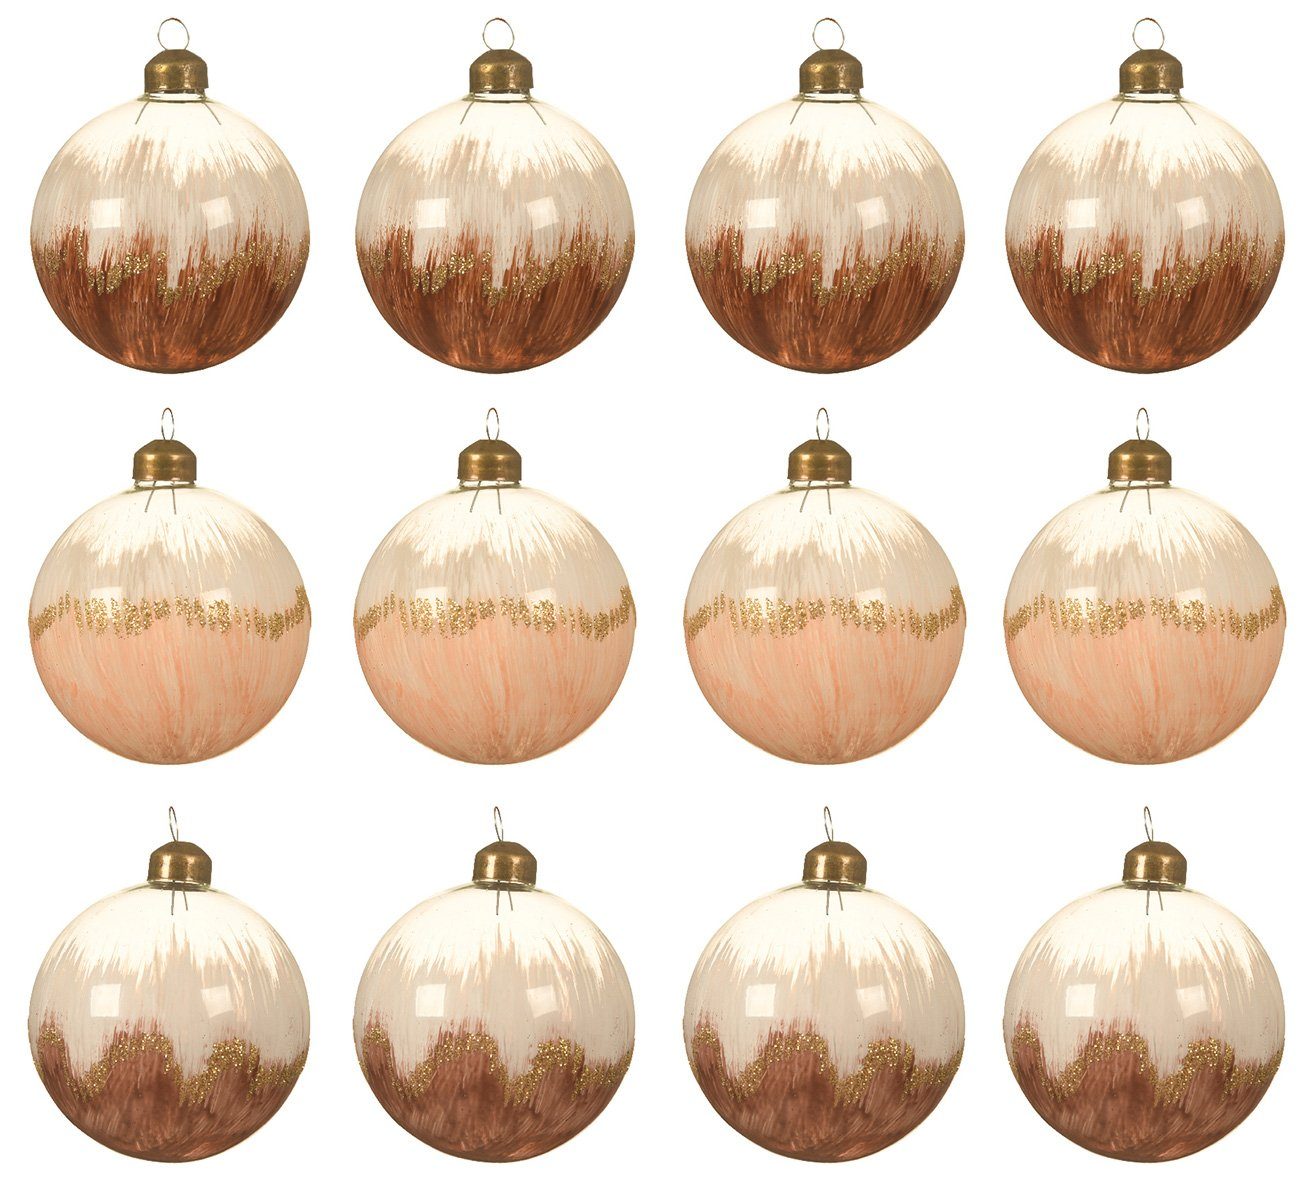 Decoris season decorations Weihnachtsbaumkugel, Verlauf Set bemalt 8cm beige braun / Glas mit Weihnachtskugeln 12er